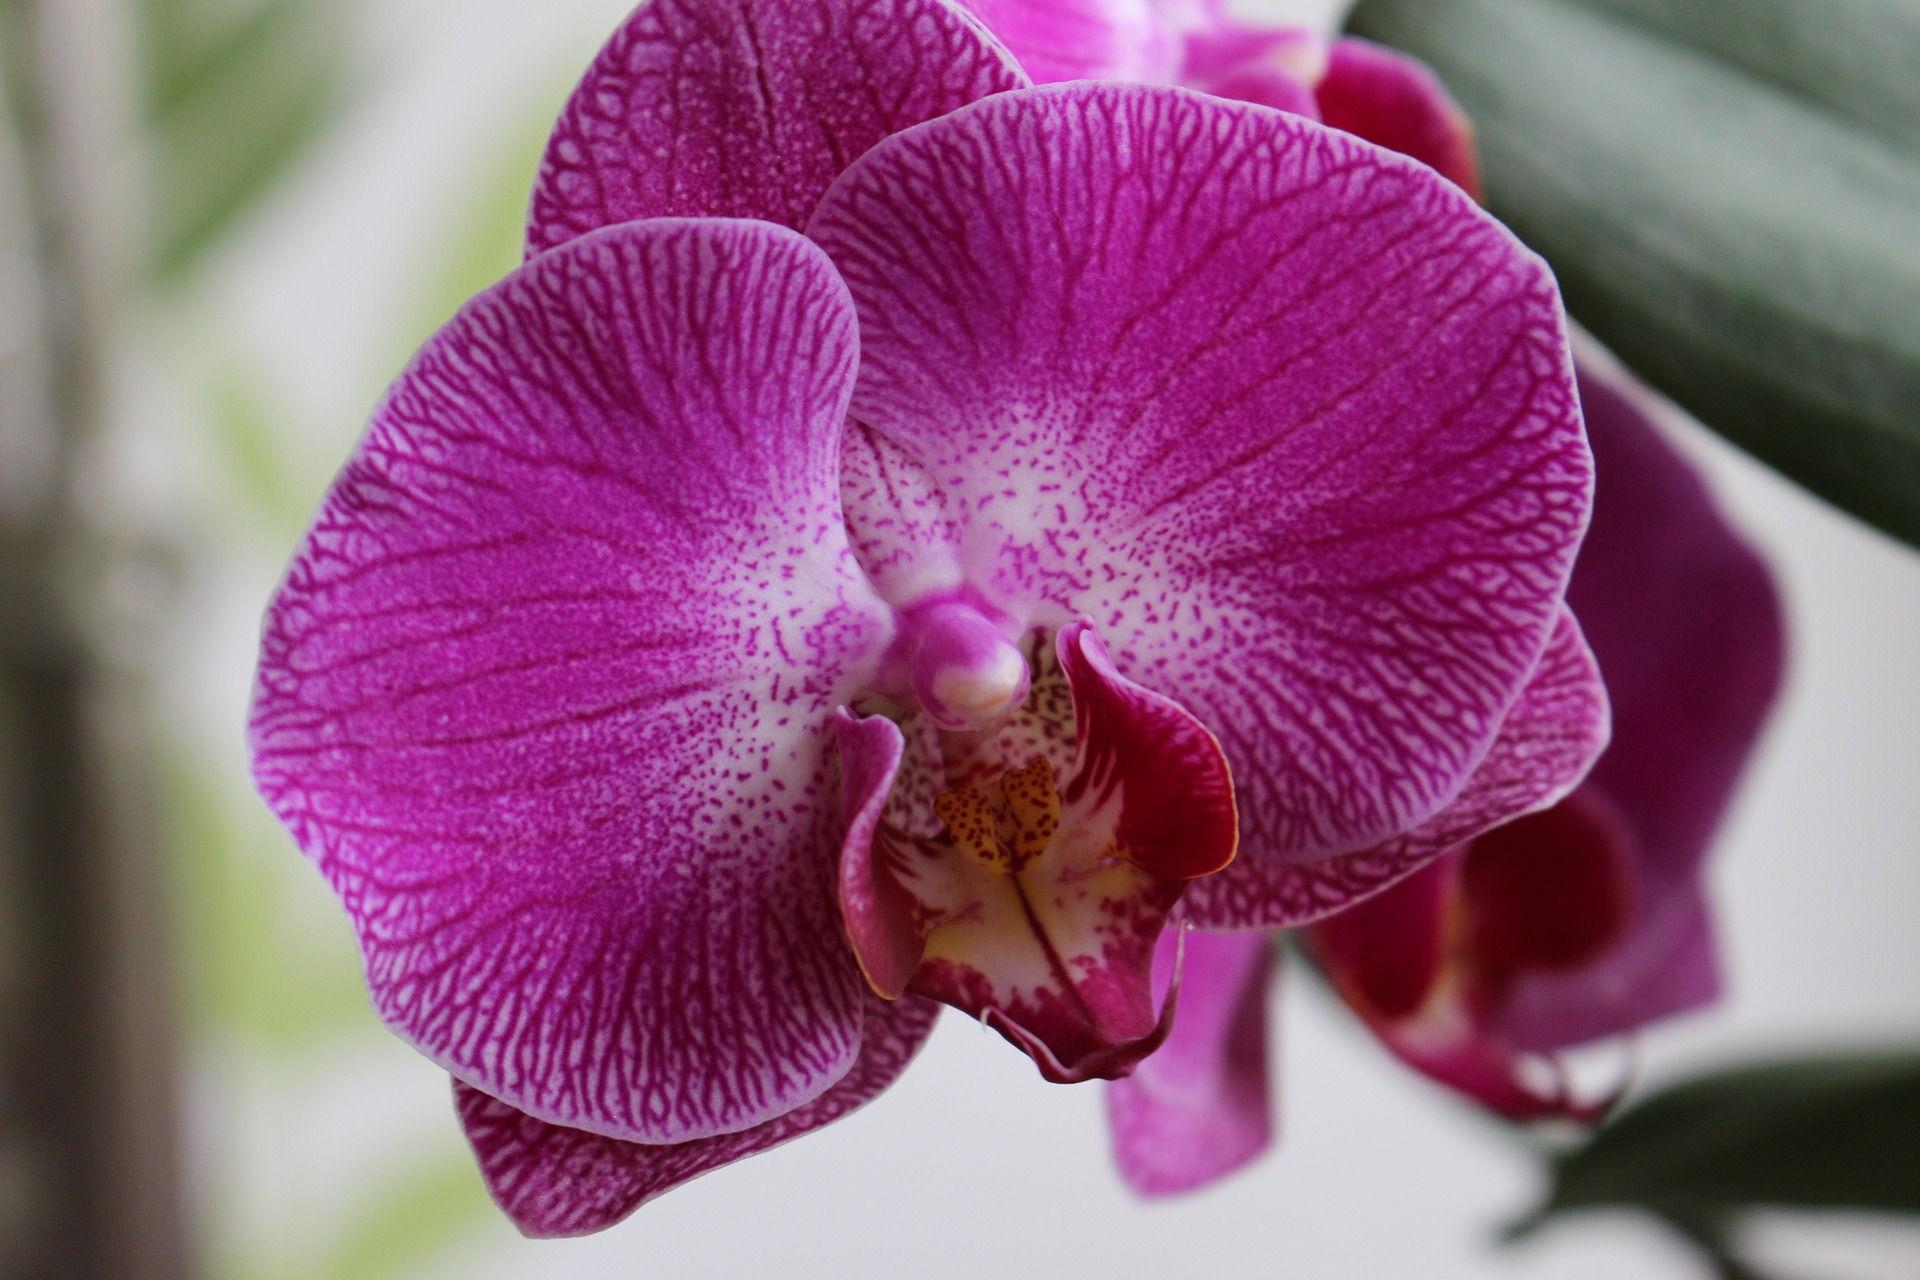 alege floarea preferata - sfatulparintilor.ro - pixabay-com - orchidea-2530819_1920